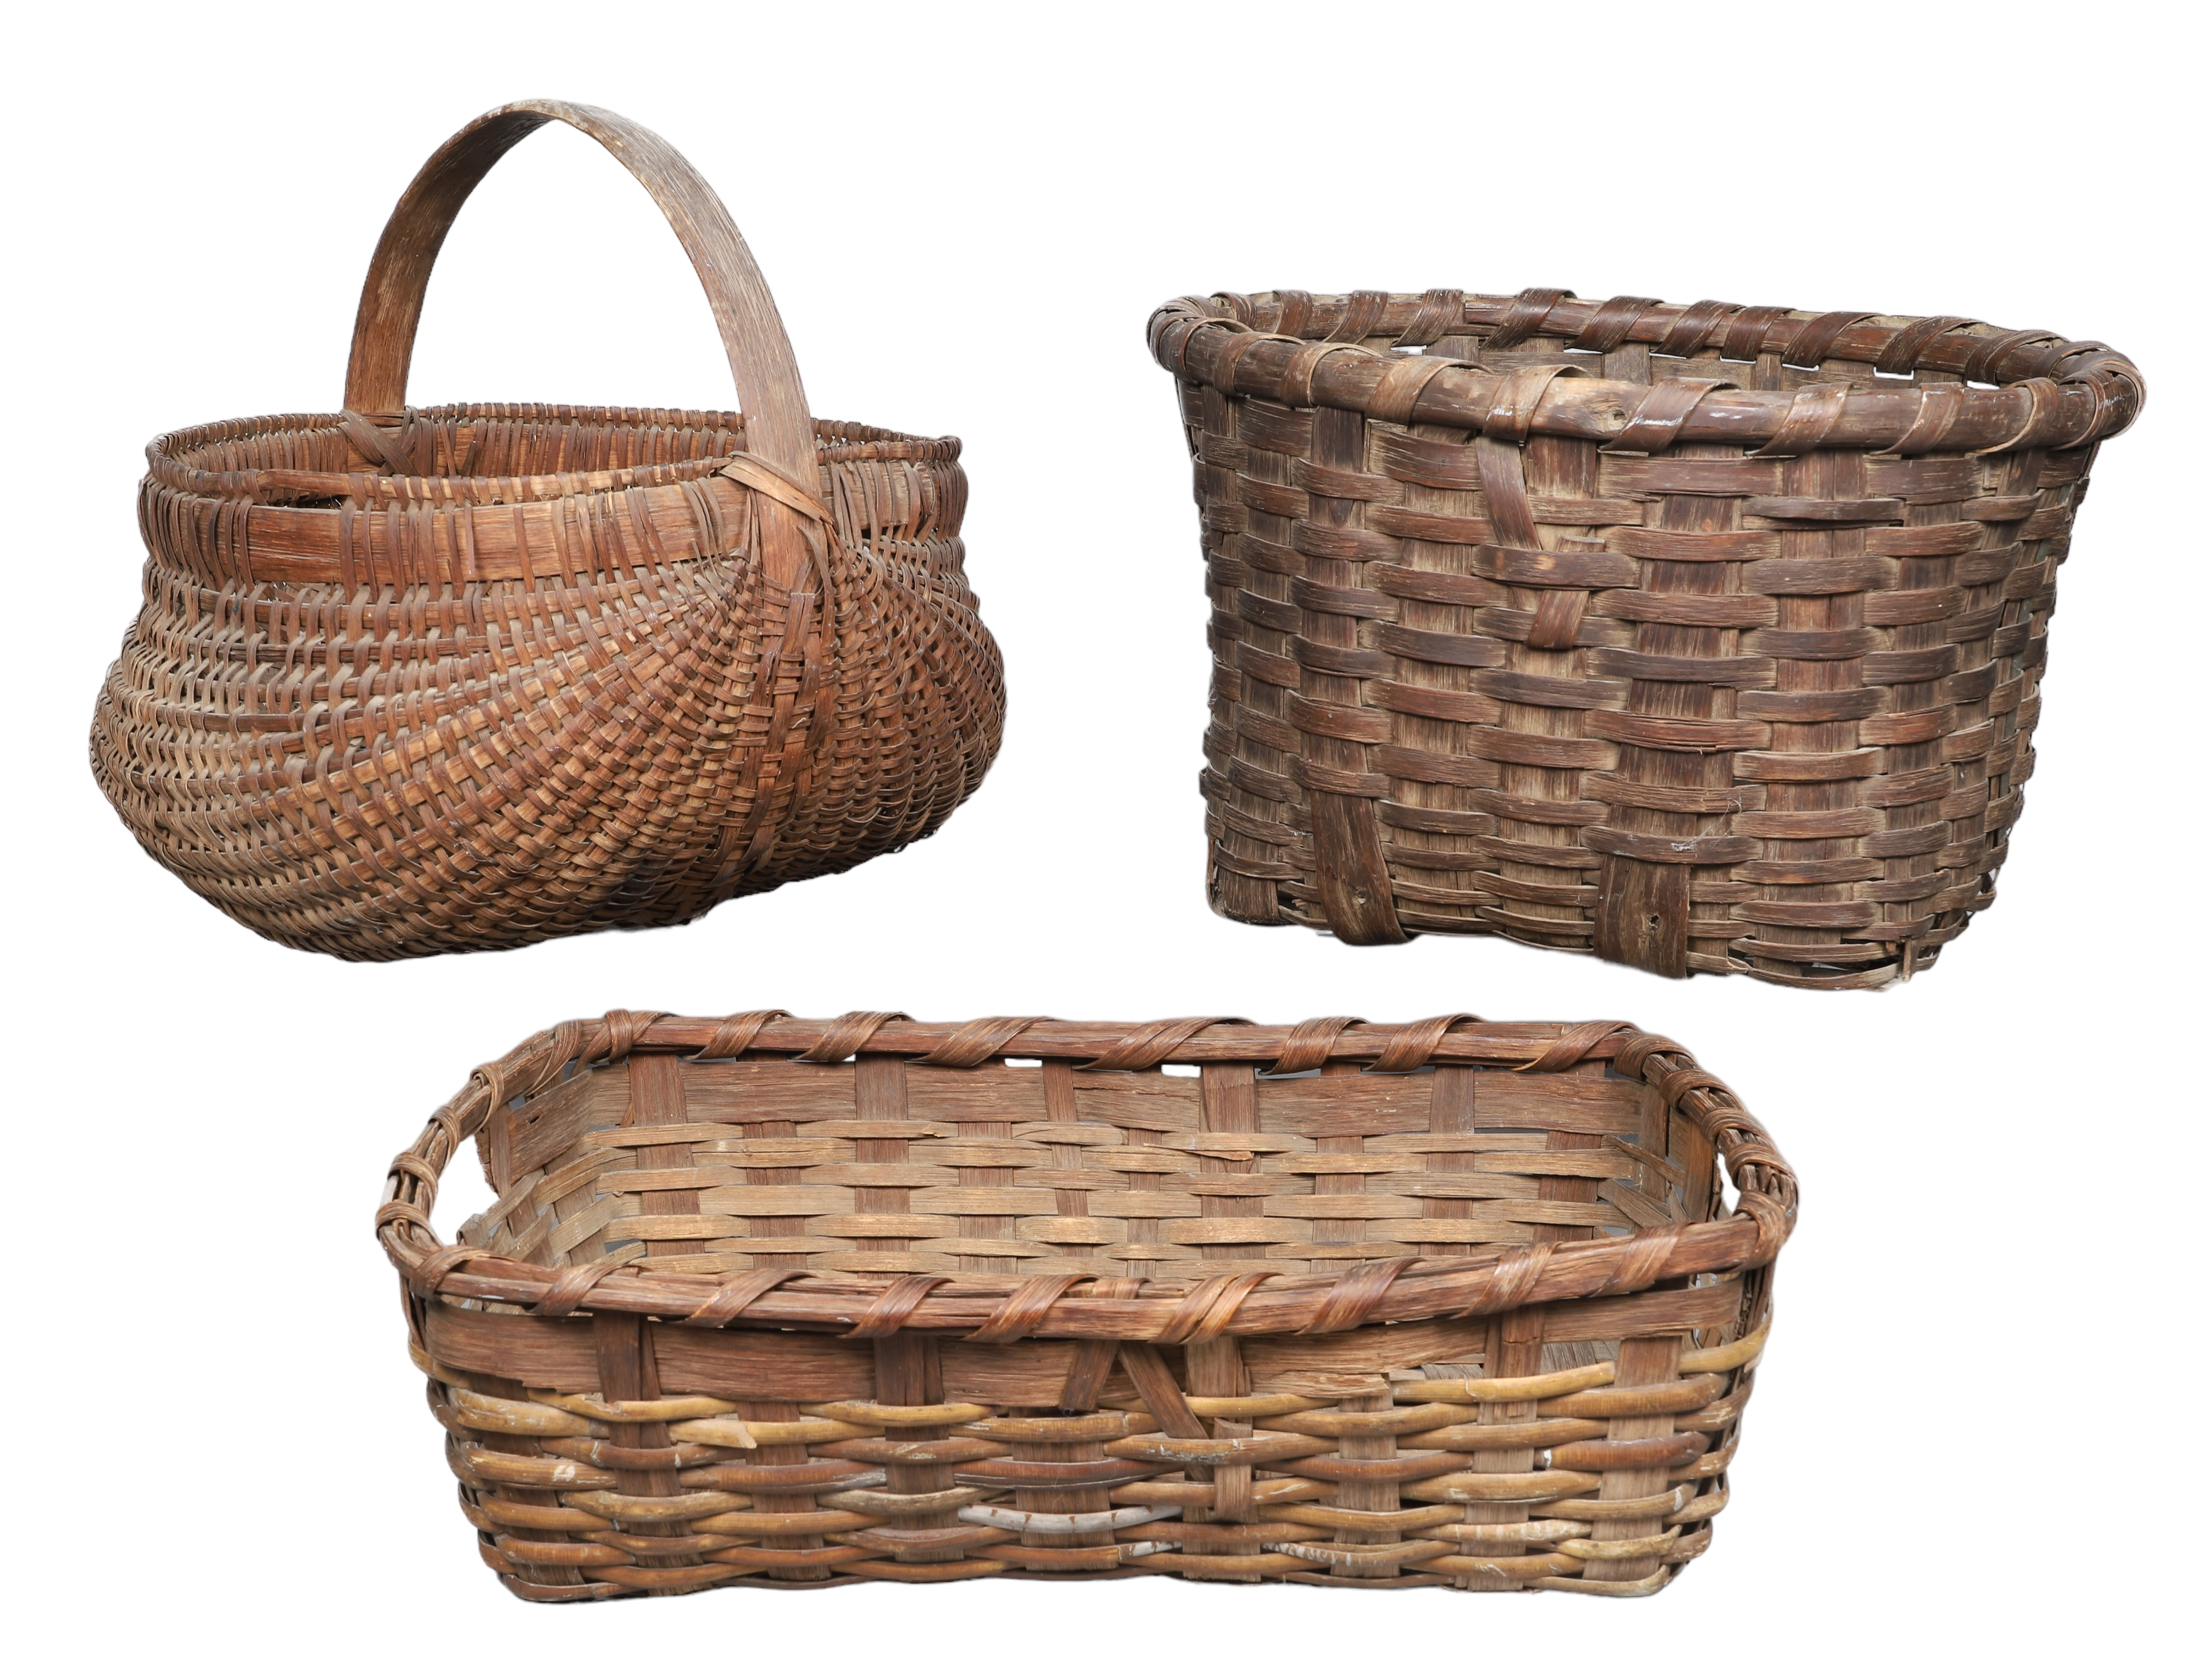  3 Oak splint baskets to include 2e1542